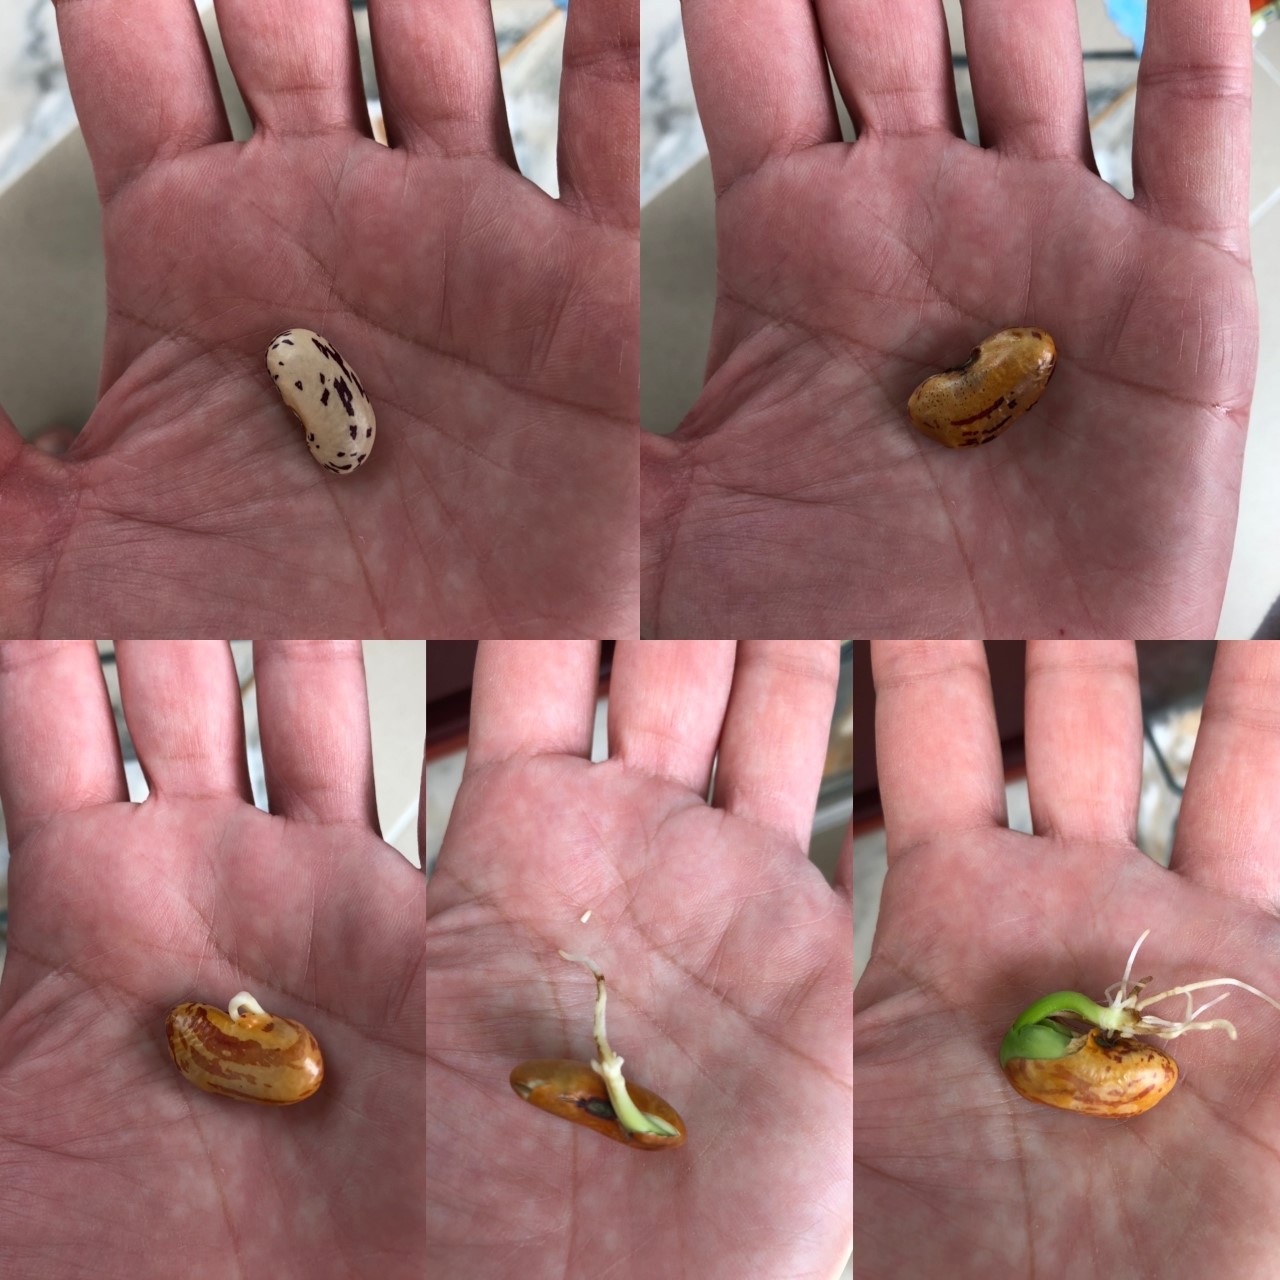 Semana 1 - Evolução da semente